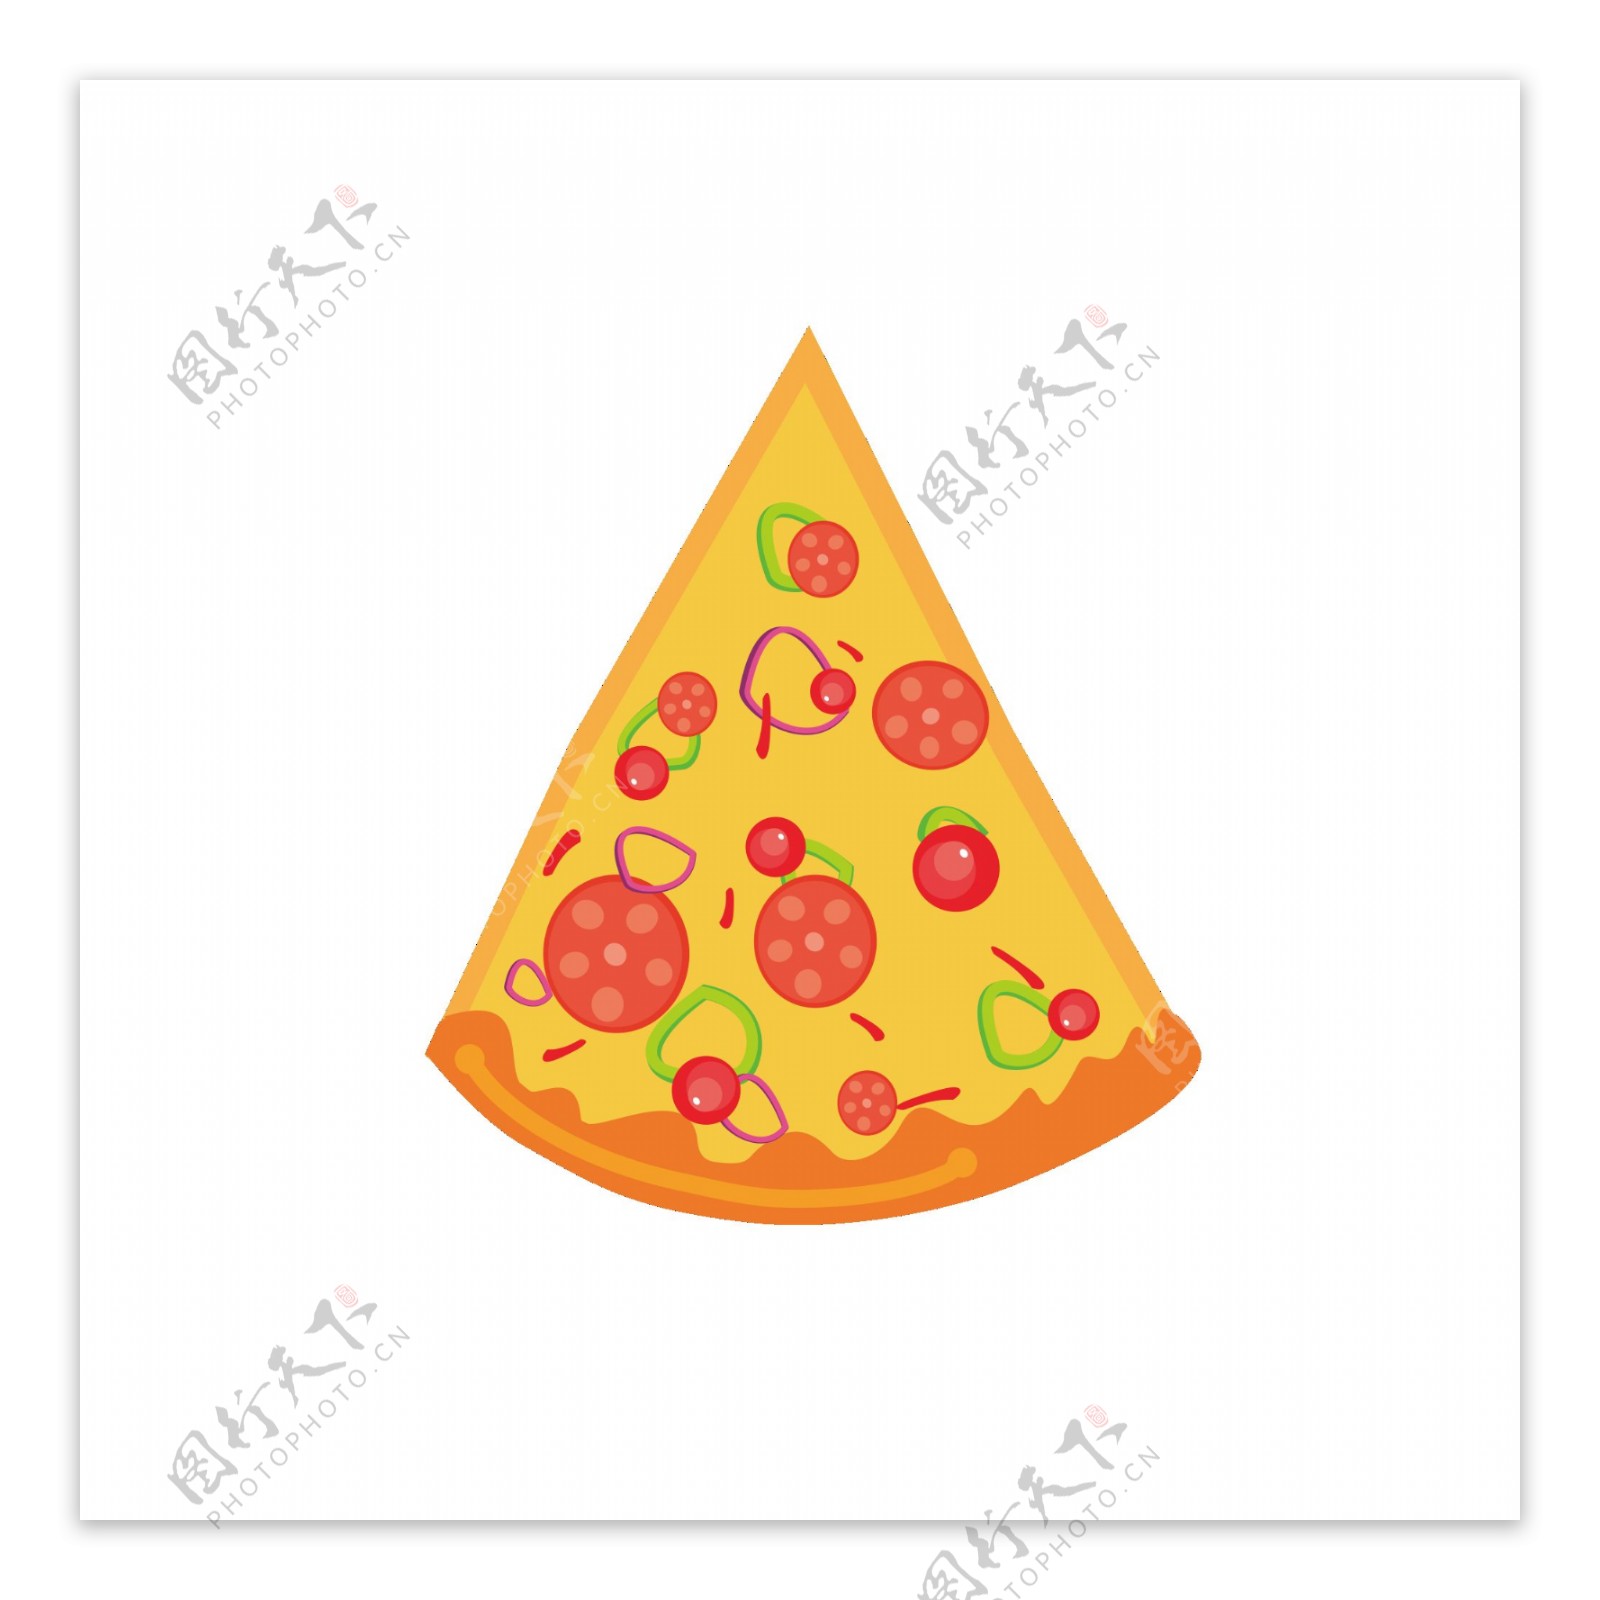 手绘可爱卡通披萨食物元素